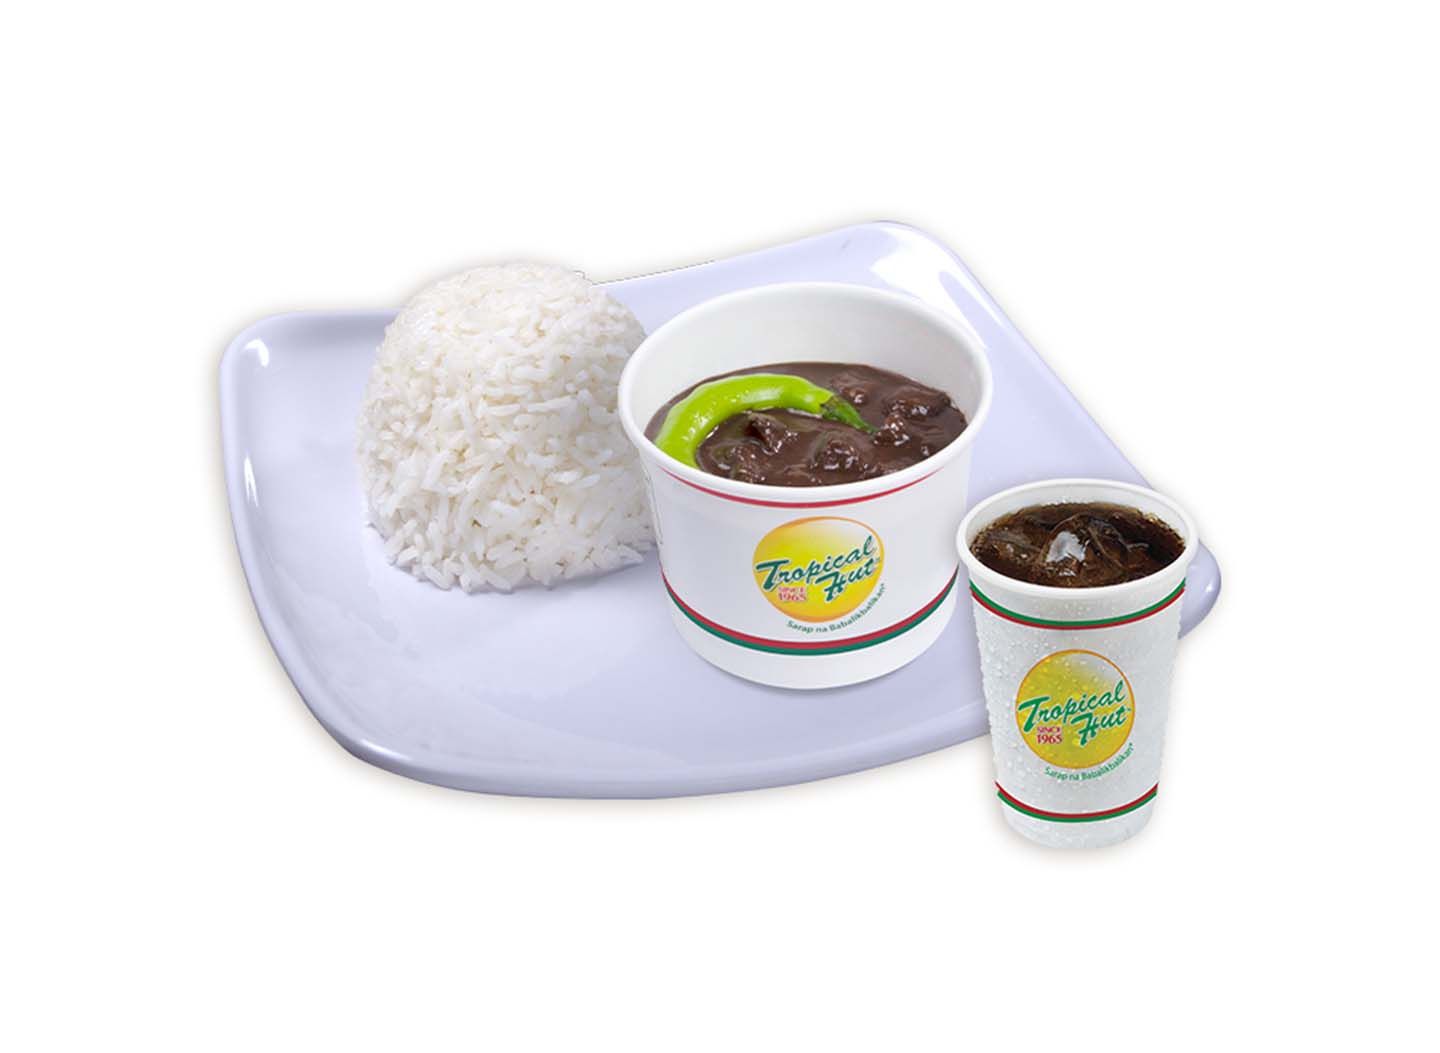 Pork Dinuguan, Rice, Regular Softdrink - Value Meal